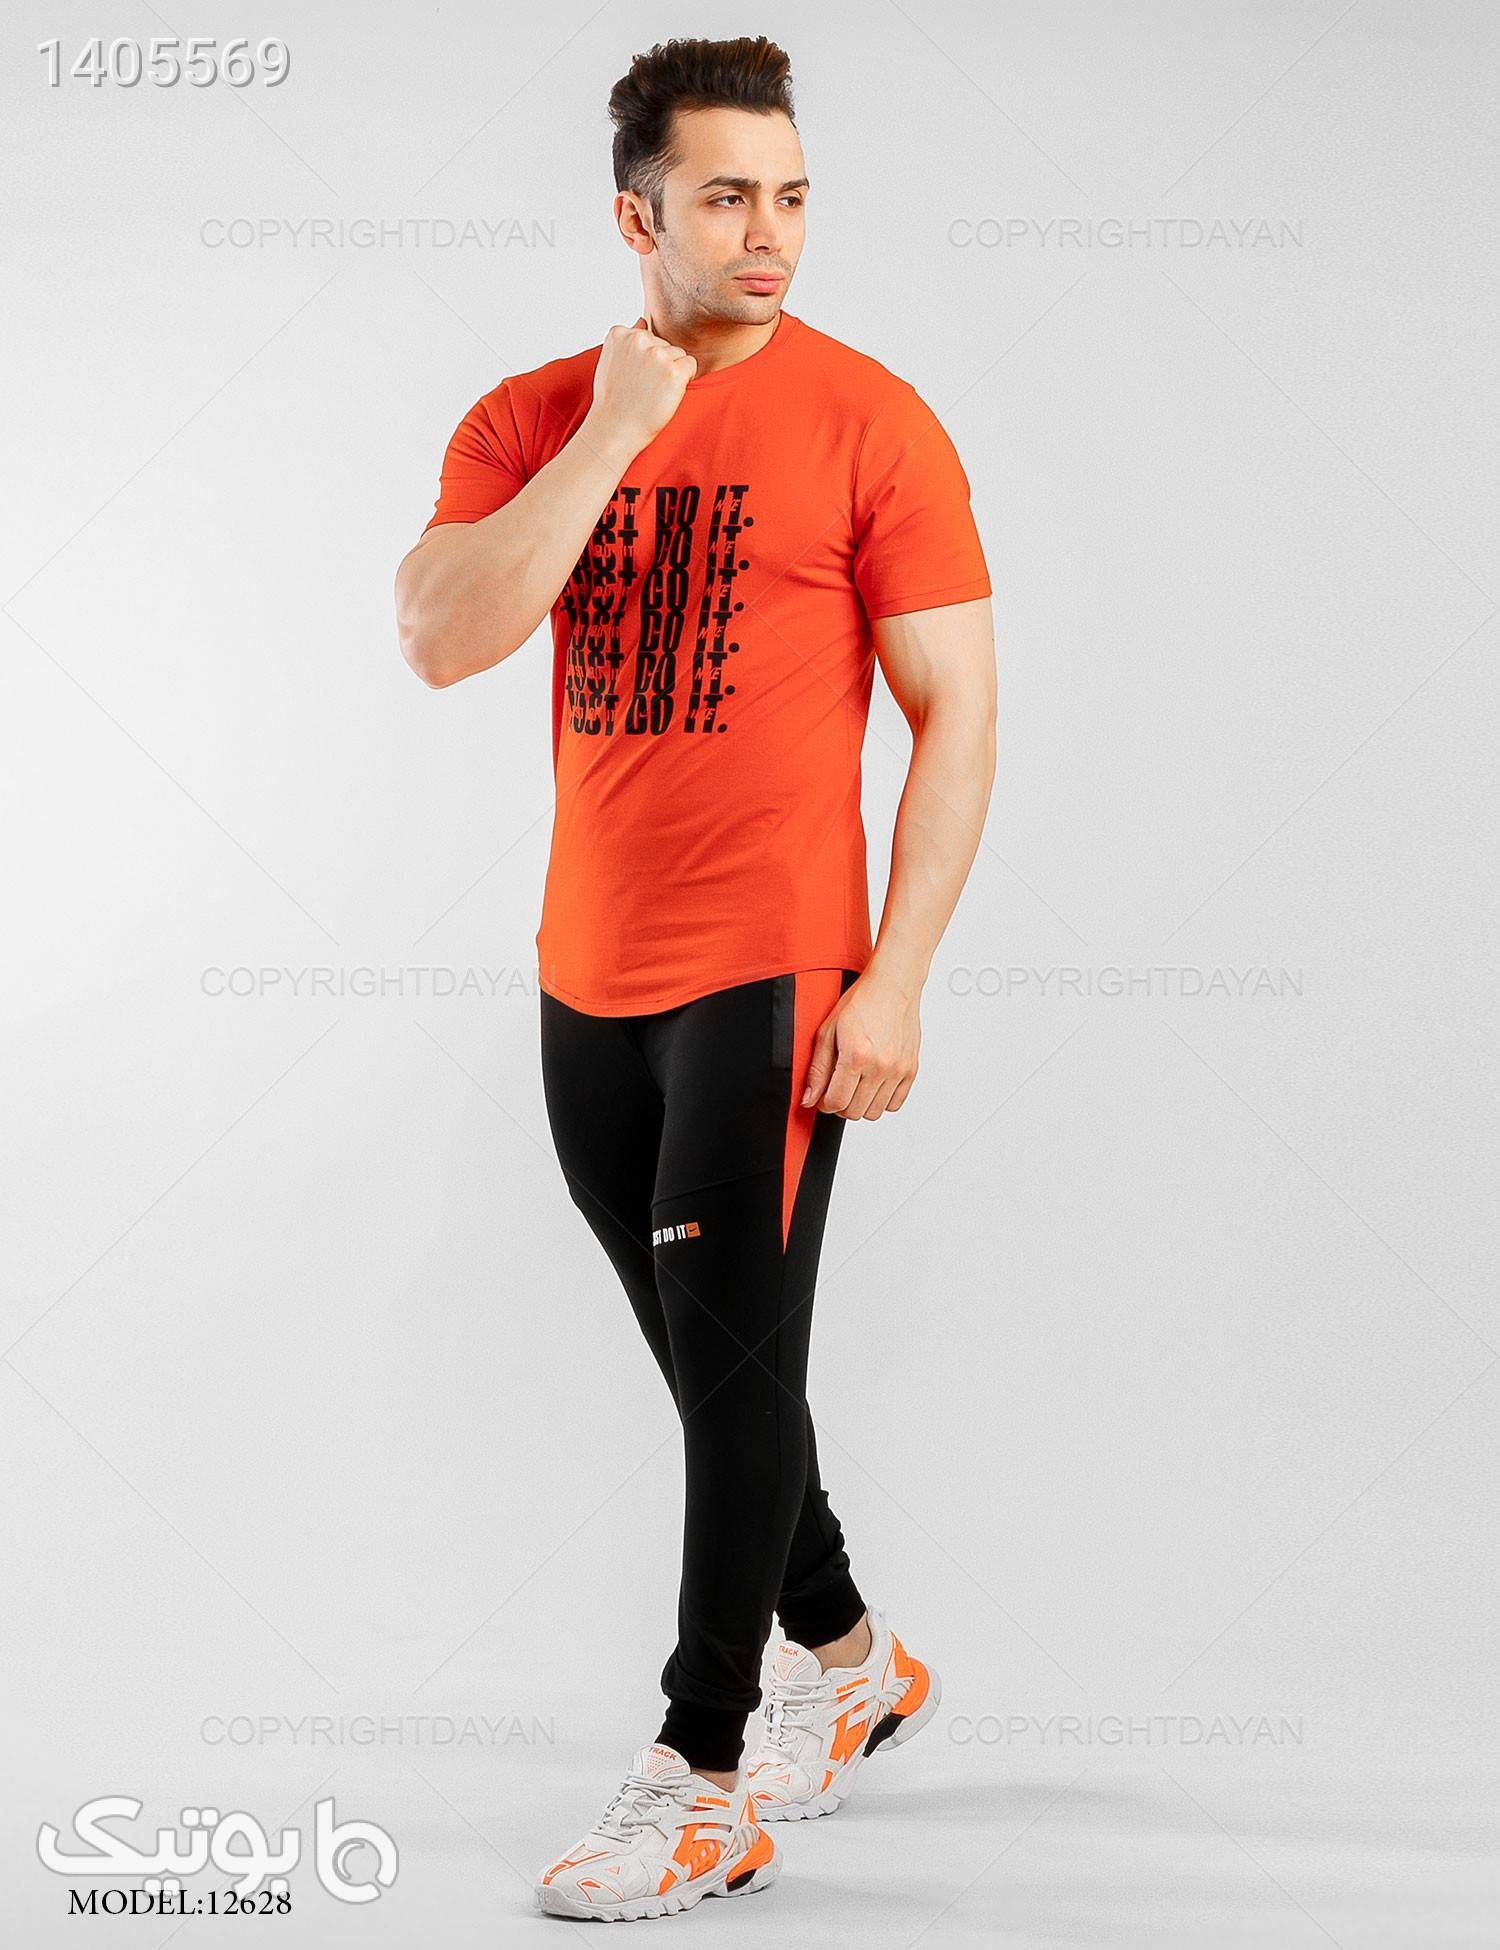 ستتیشرت و شلوار مردانه Alma مدل 12628 نارنجی ست ورزشی مردانه